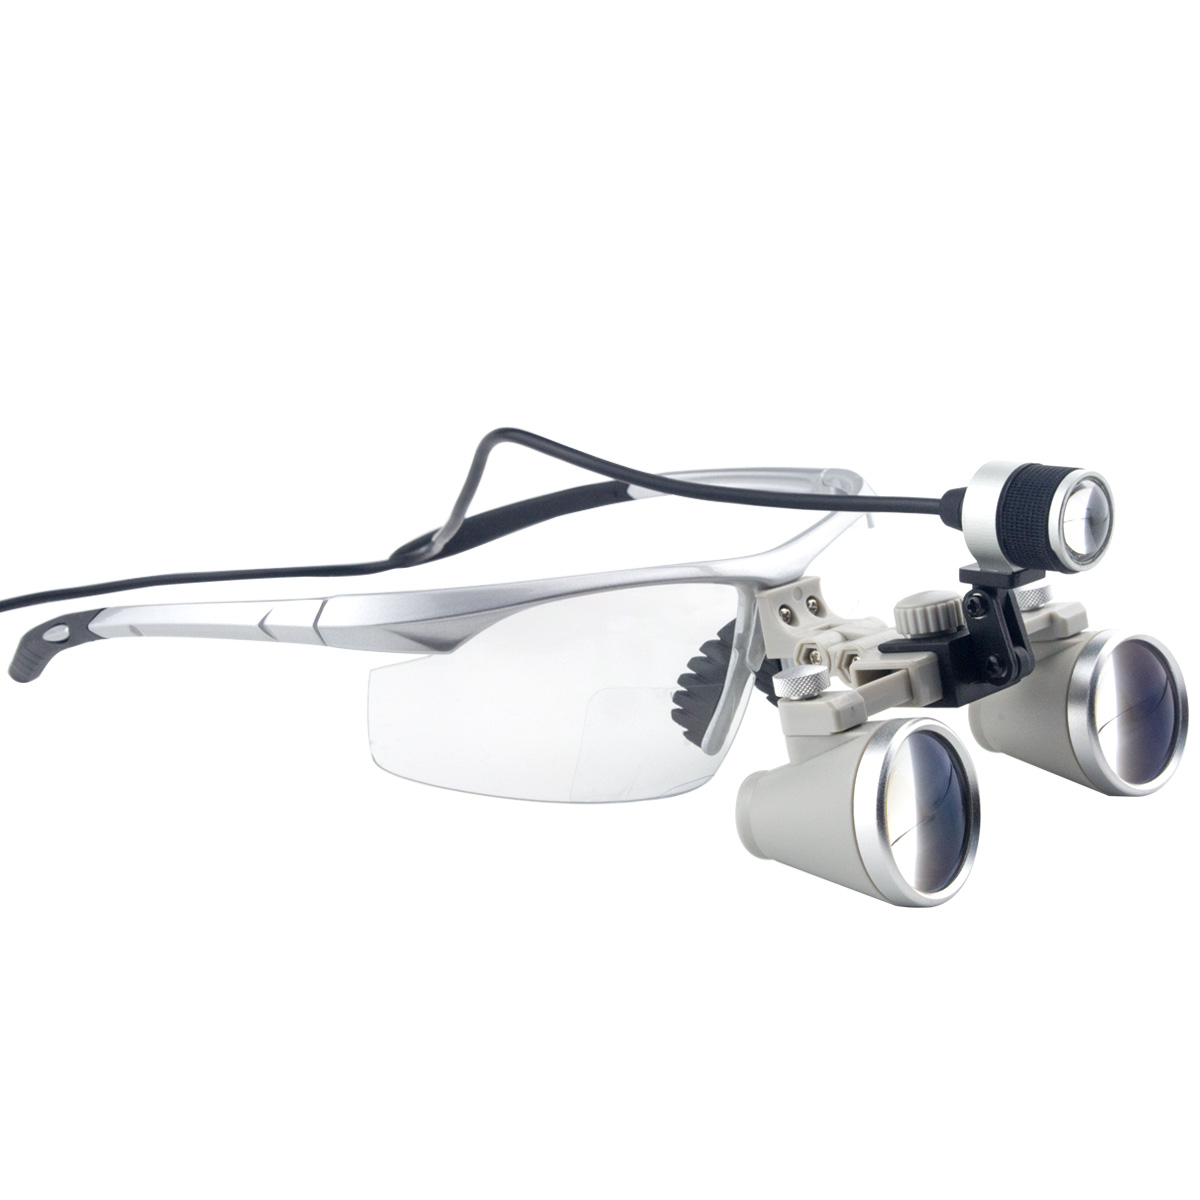 3.5x Förstoring Professional luppar med Silver BP Sports Frame och monterade LED Head Light för Dental, Kirurgisk, Juvelerare, eller hobby | Justerbar elev Avstånd Model # CH350AXSL